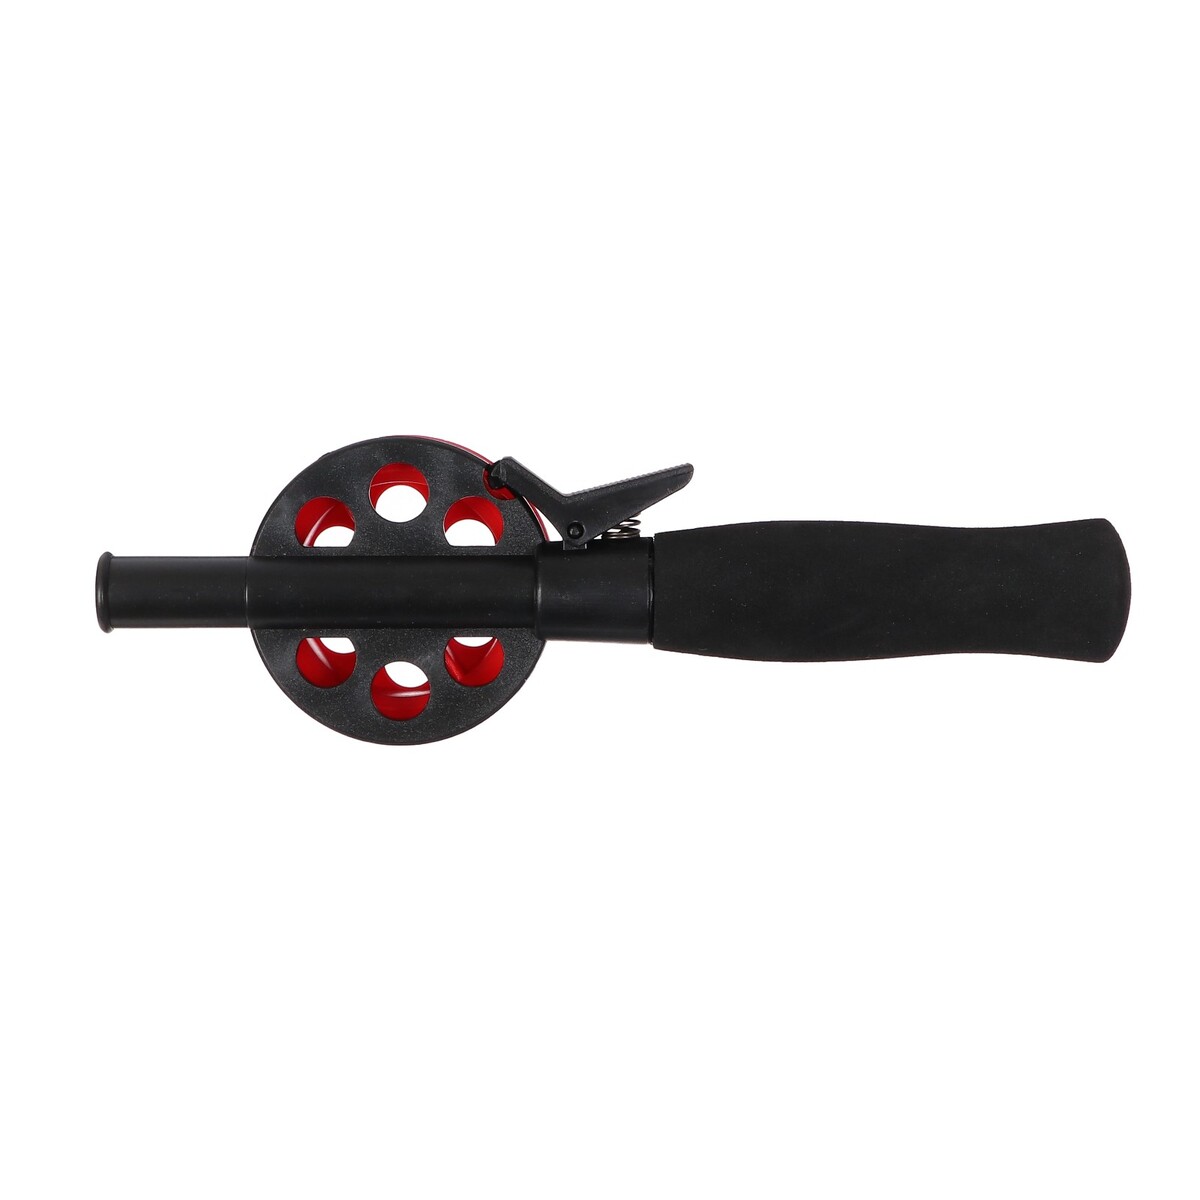 фото Удочка зимняя, ручка неопрен, диаметр катушки 5.5 см, длина 33 см, цвет красный, hfb-34 no brand